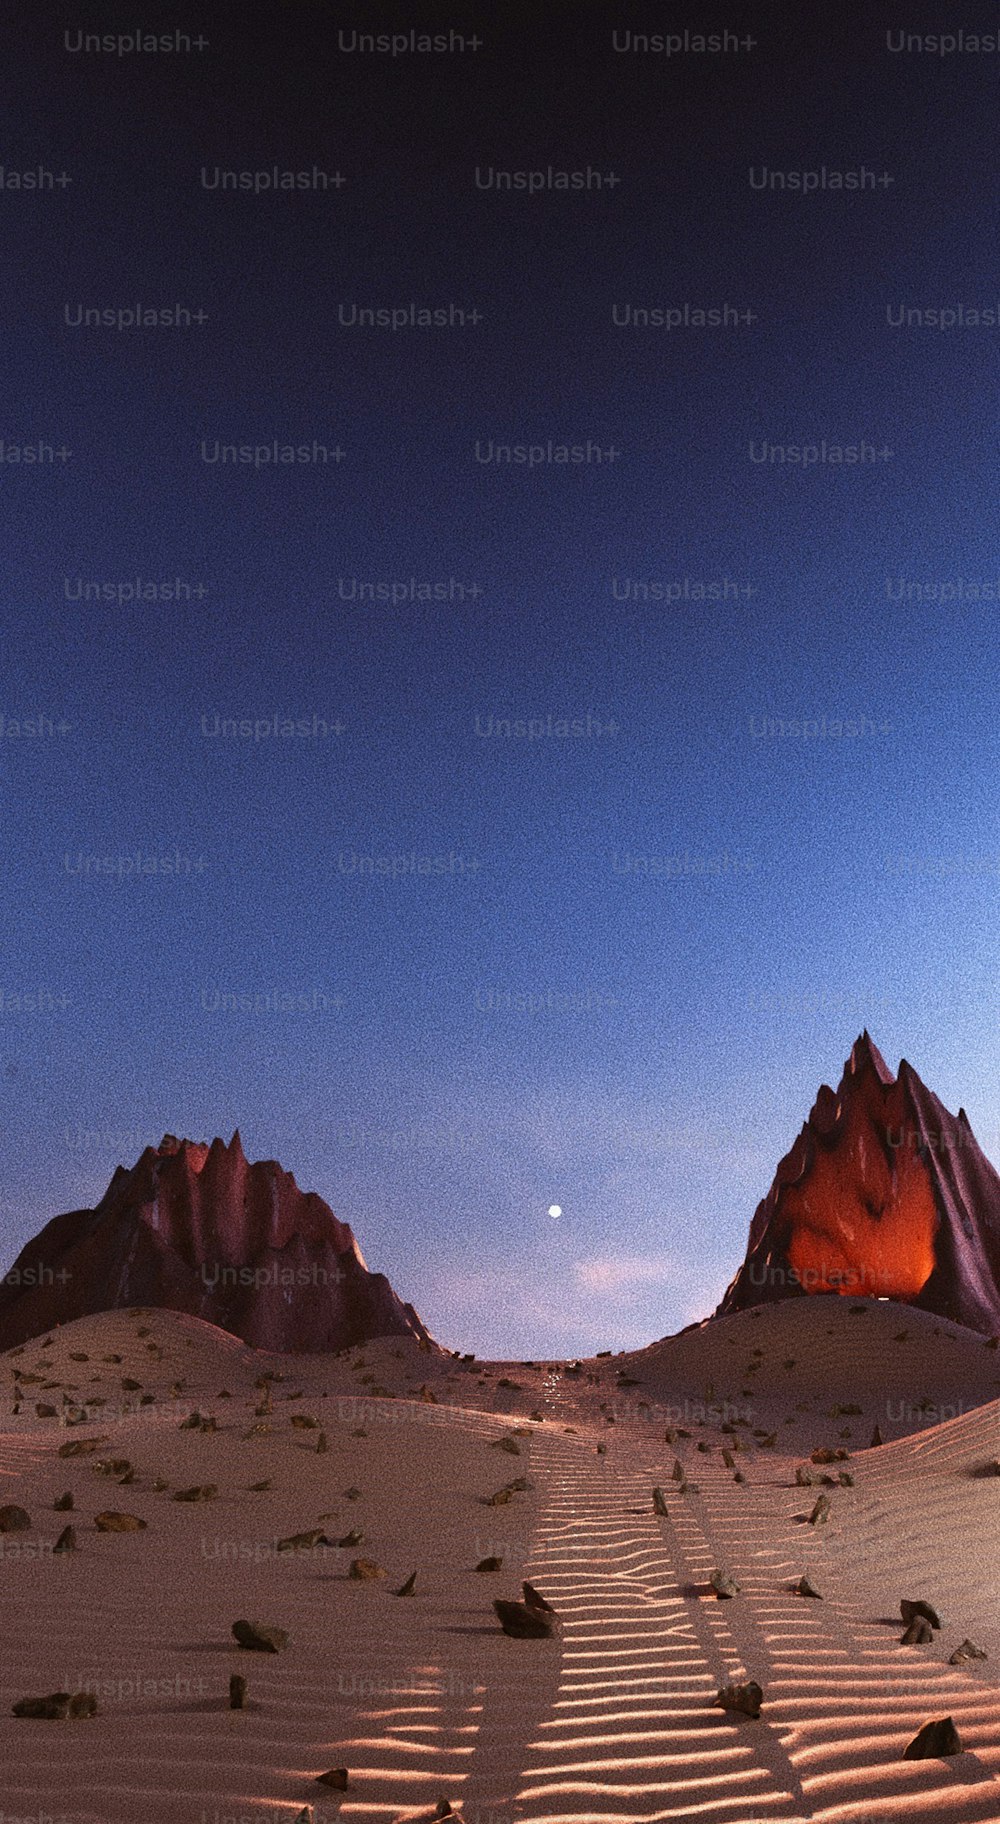 Une vue d’un désert avec des montagnes en arrière-plan